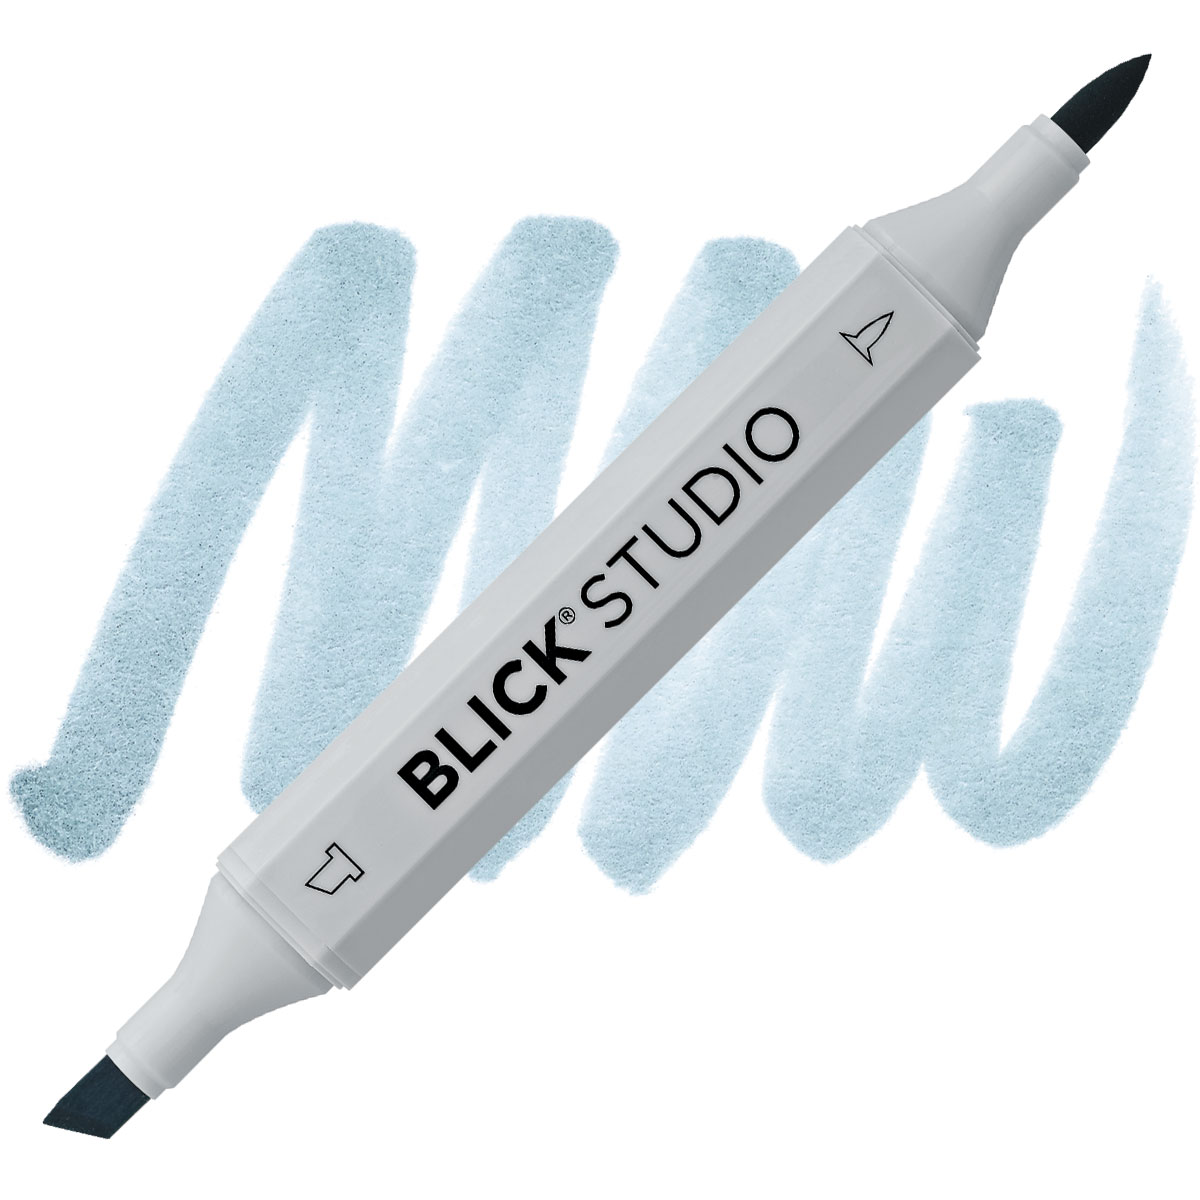 Blick Studio Brush Marker - Colorless Blender